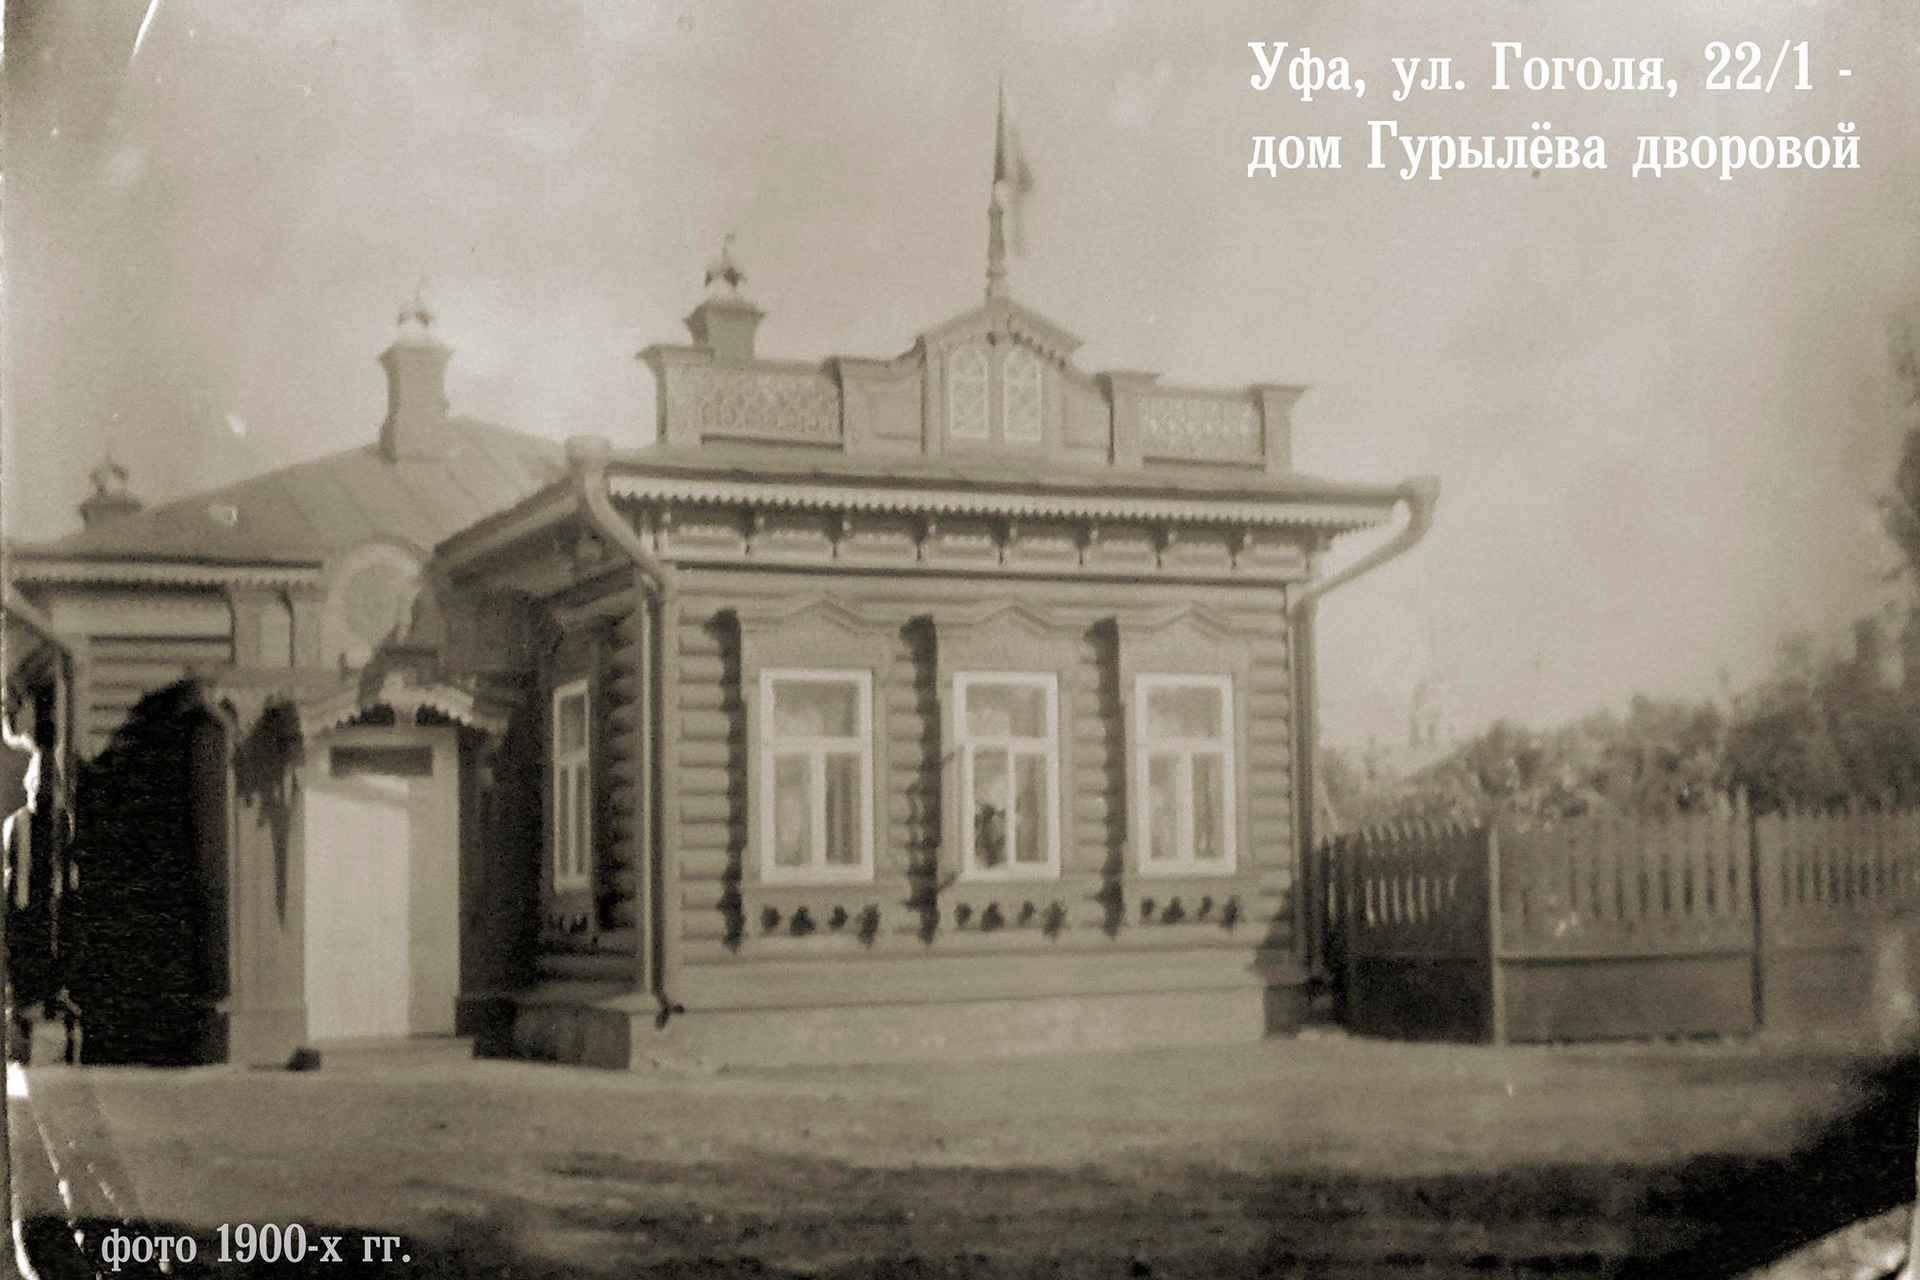 Дворовой дом усадьбы Гурылёва, фото начала XX века